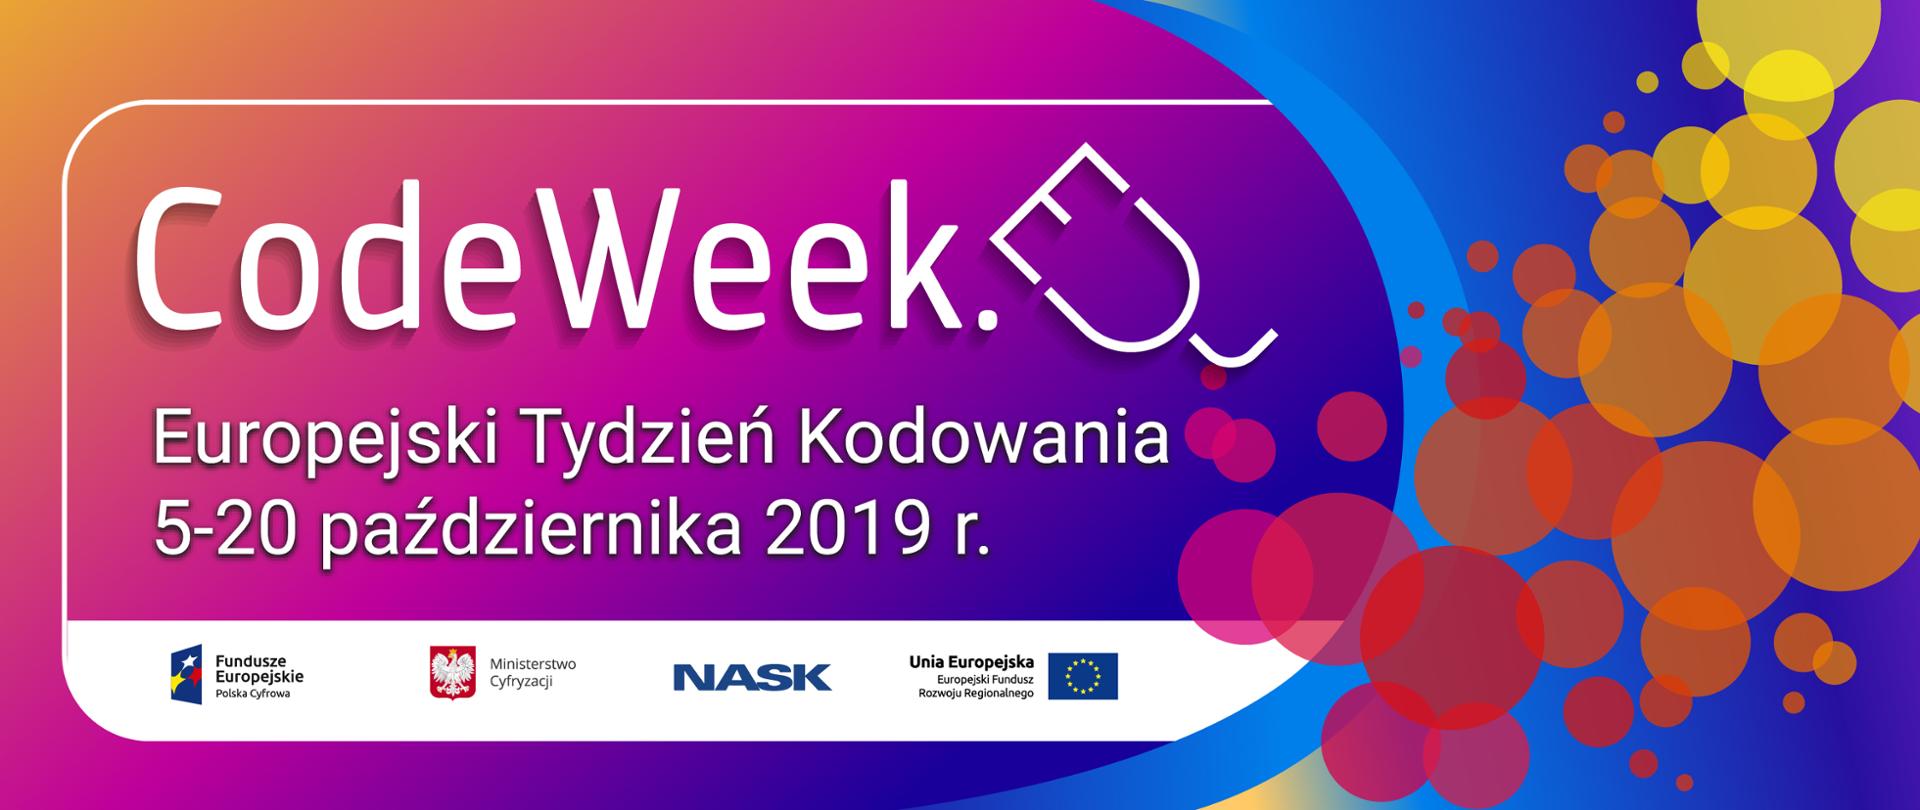 Grafika promująca Europejski Tydzień Kodowania. Komputerowa myszka a obok niej napis: CodeWeek. Europejski Tydzień Kodowania 5-20 października 2019 r.